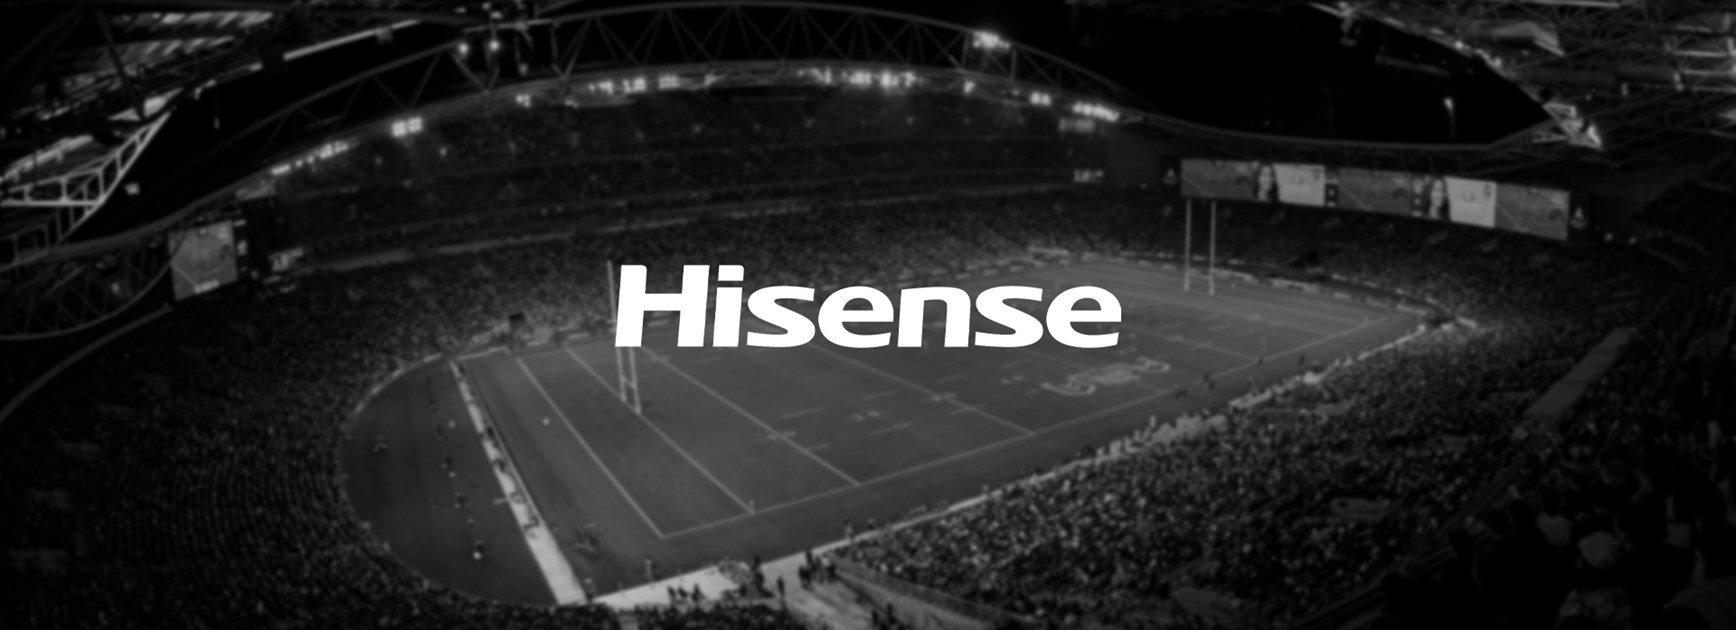 Hisense Australia extends major NRL sponsorship for three more years